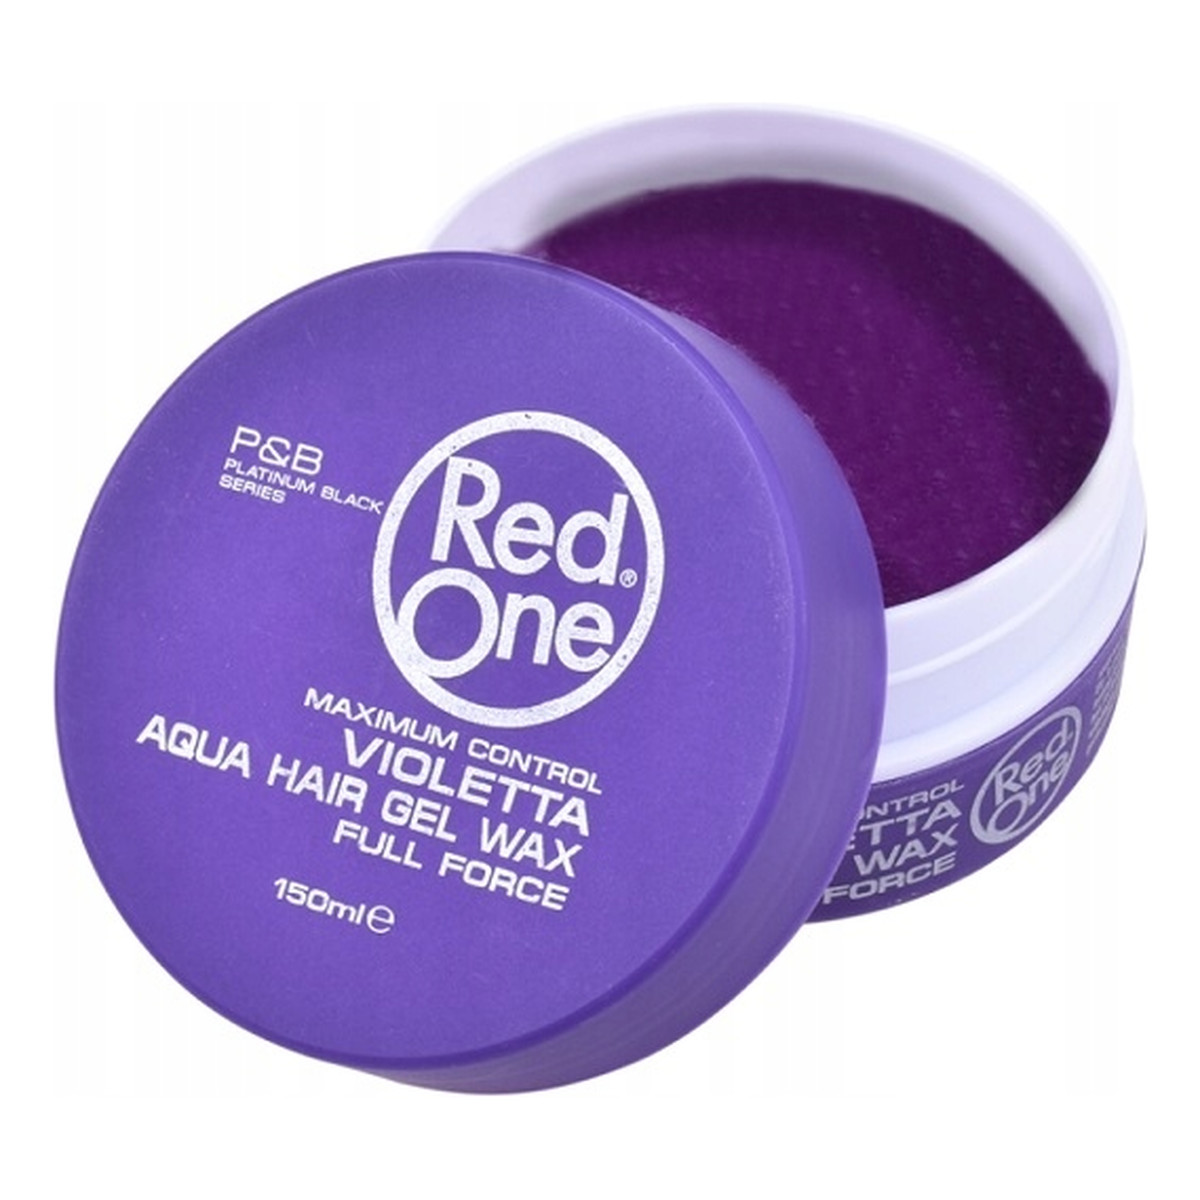 Red One Full Force wosk do włosów Violetta 150ml